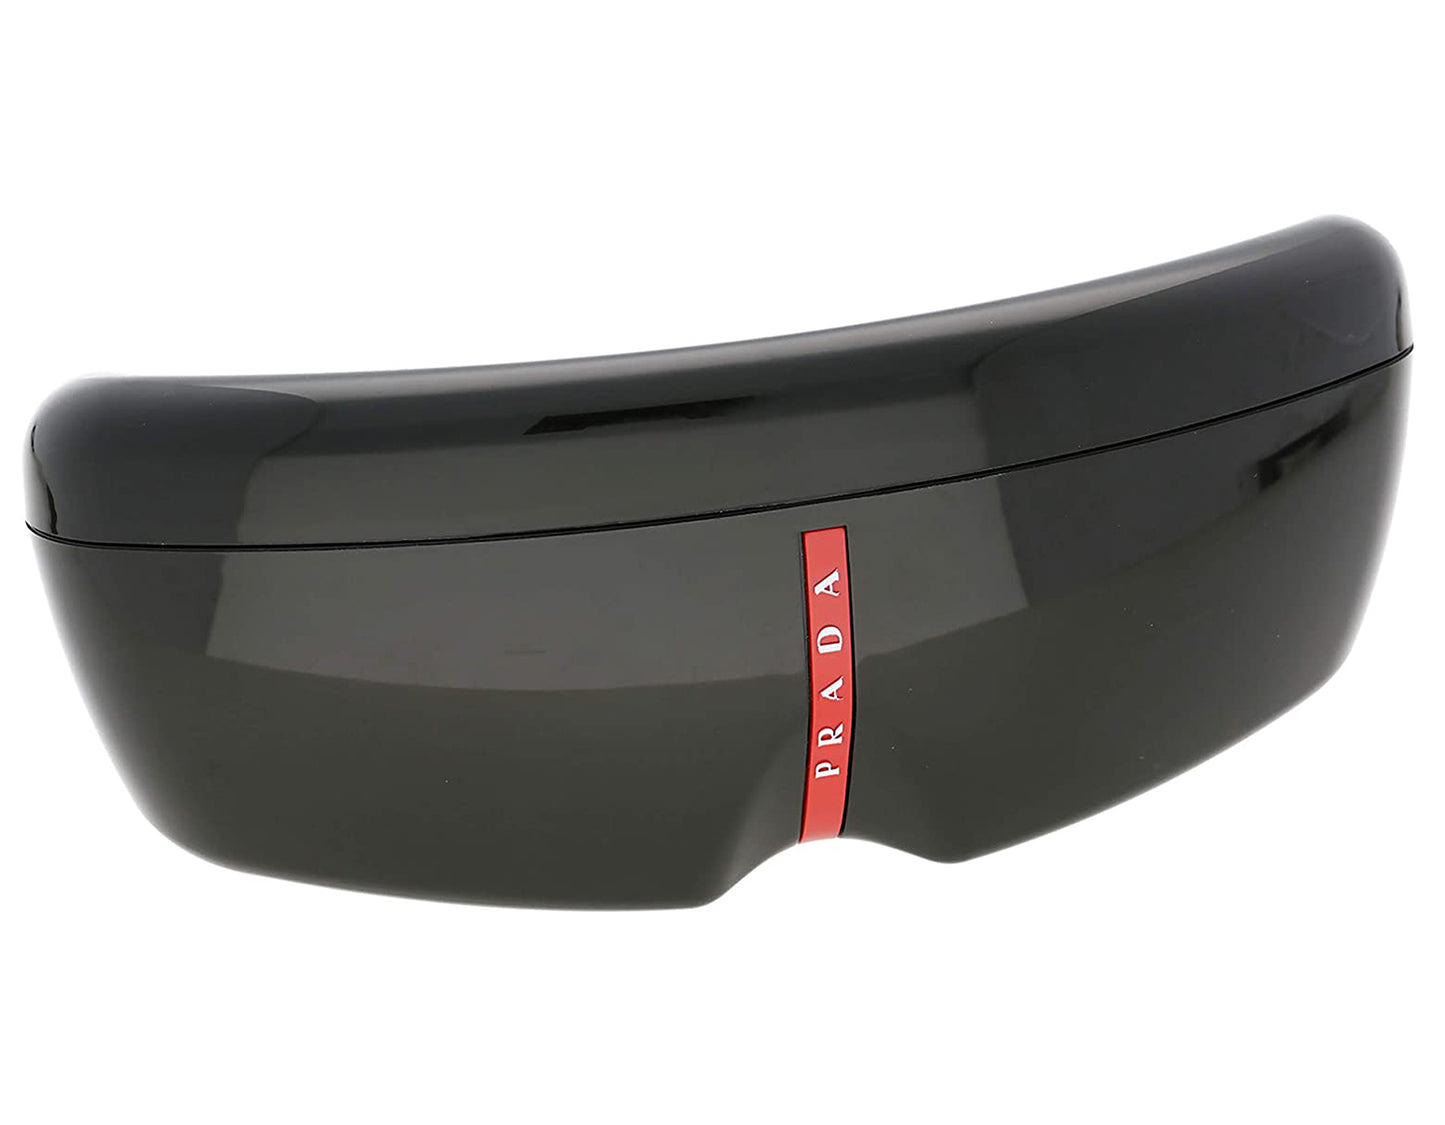 Prada Sport PS03QS-DG00A7 57mm New Sunglasses